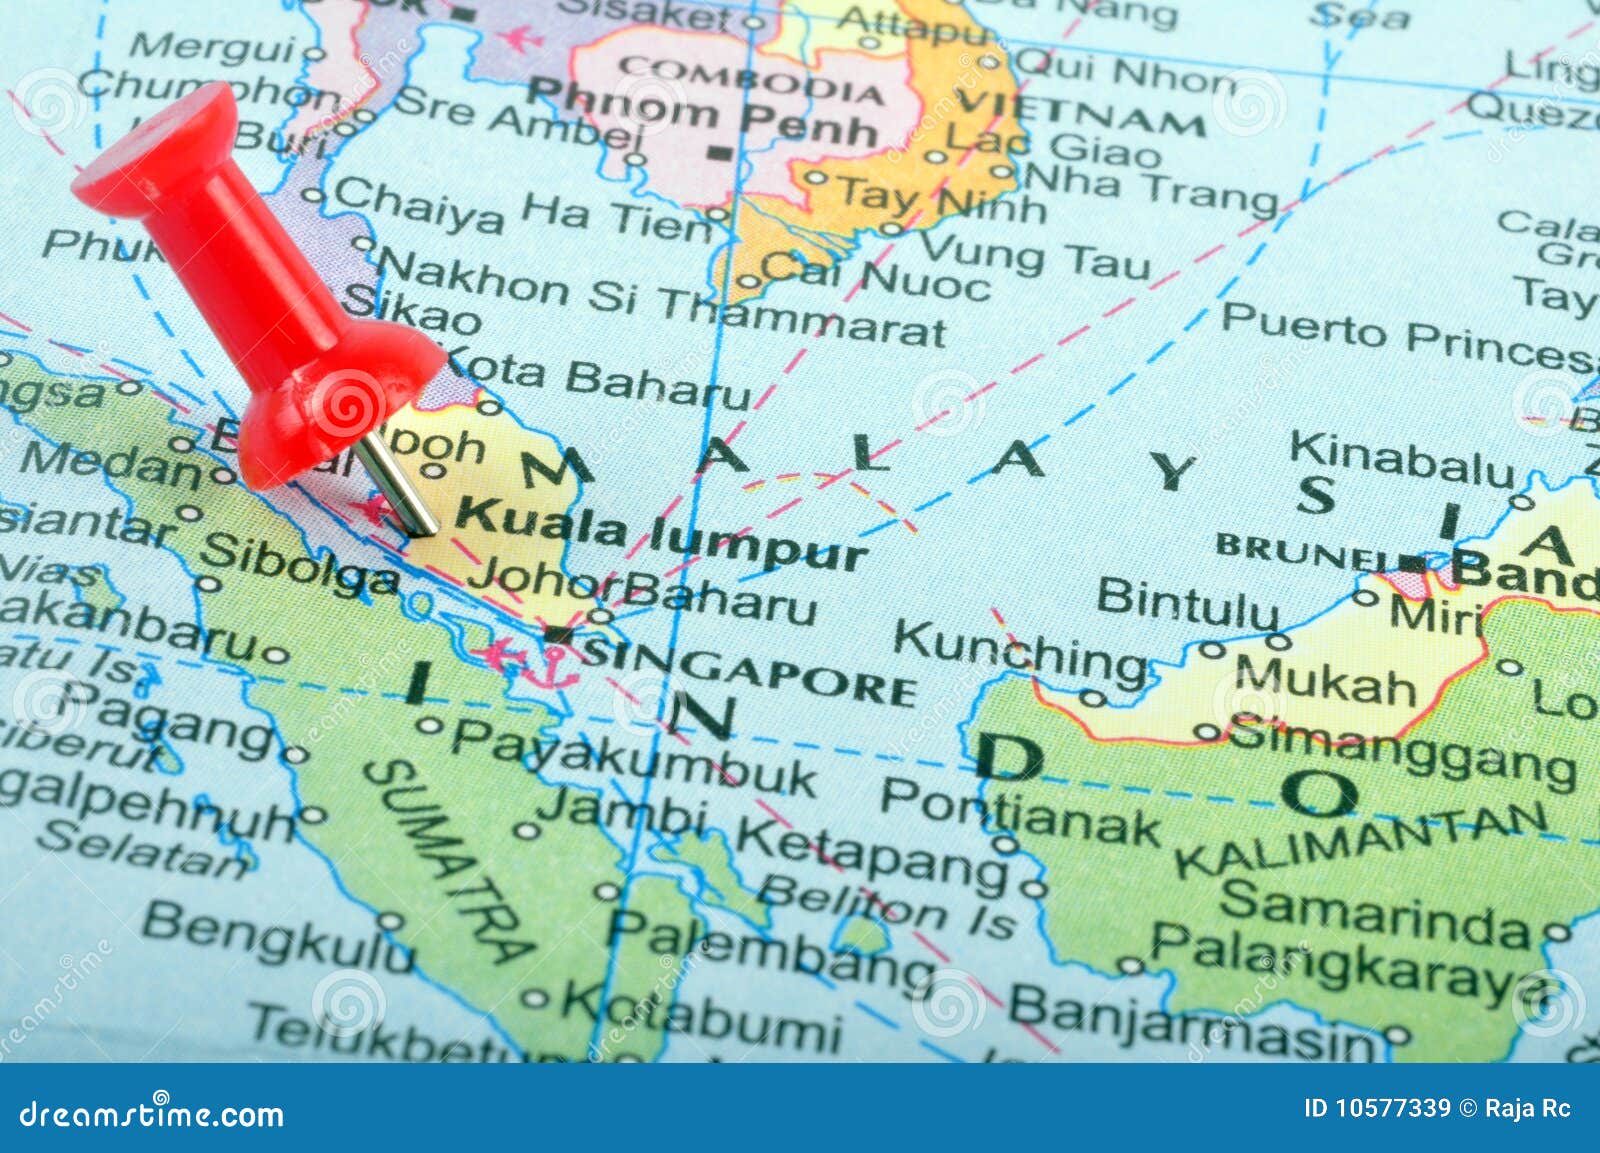 malaysia in map